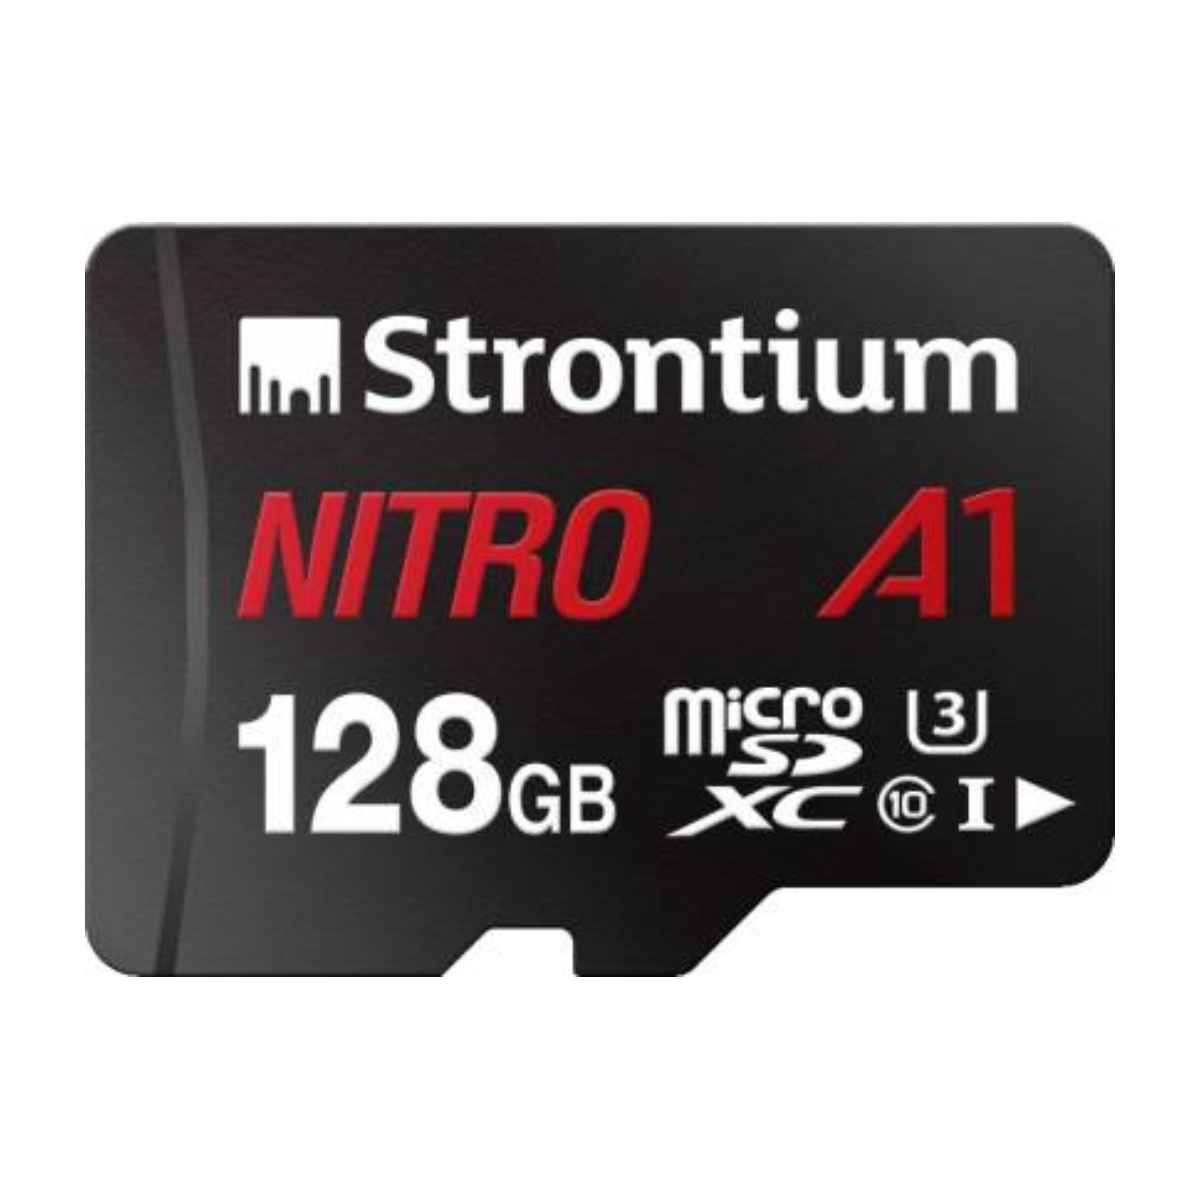 Strontium Nitro 